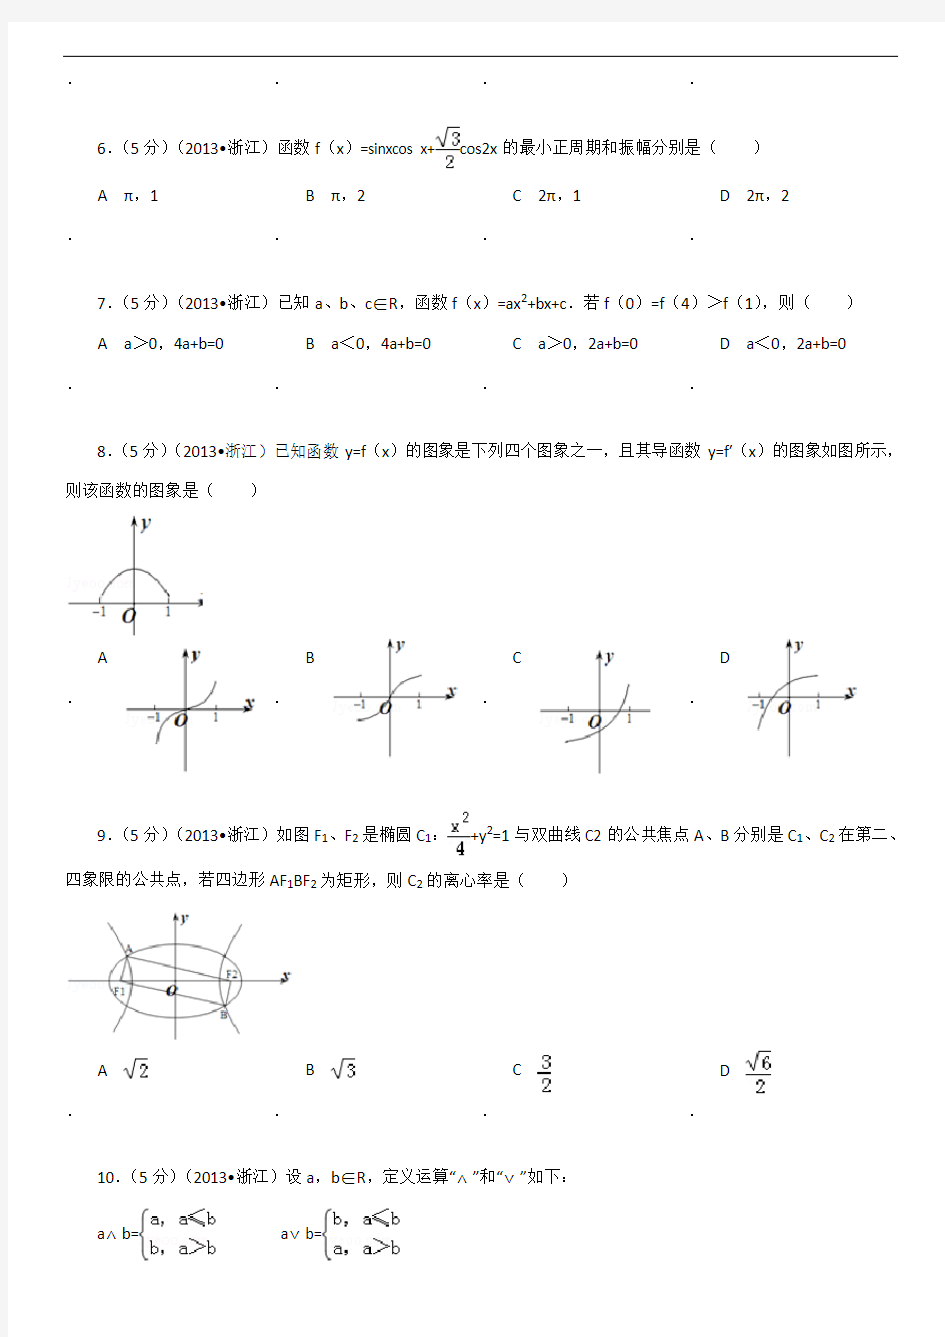 2013年浙江省高考数学试卷(文科)及解析